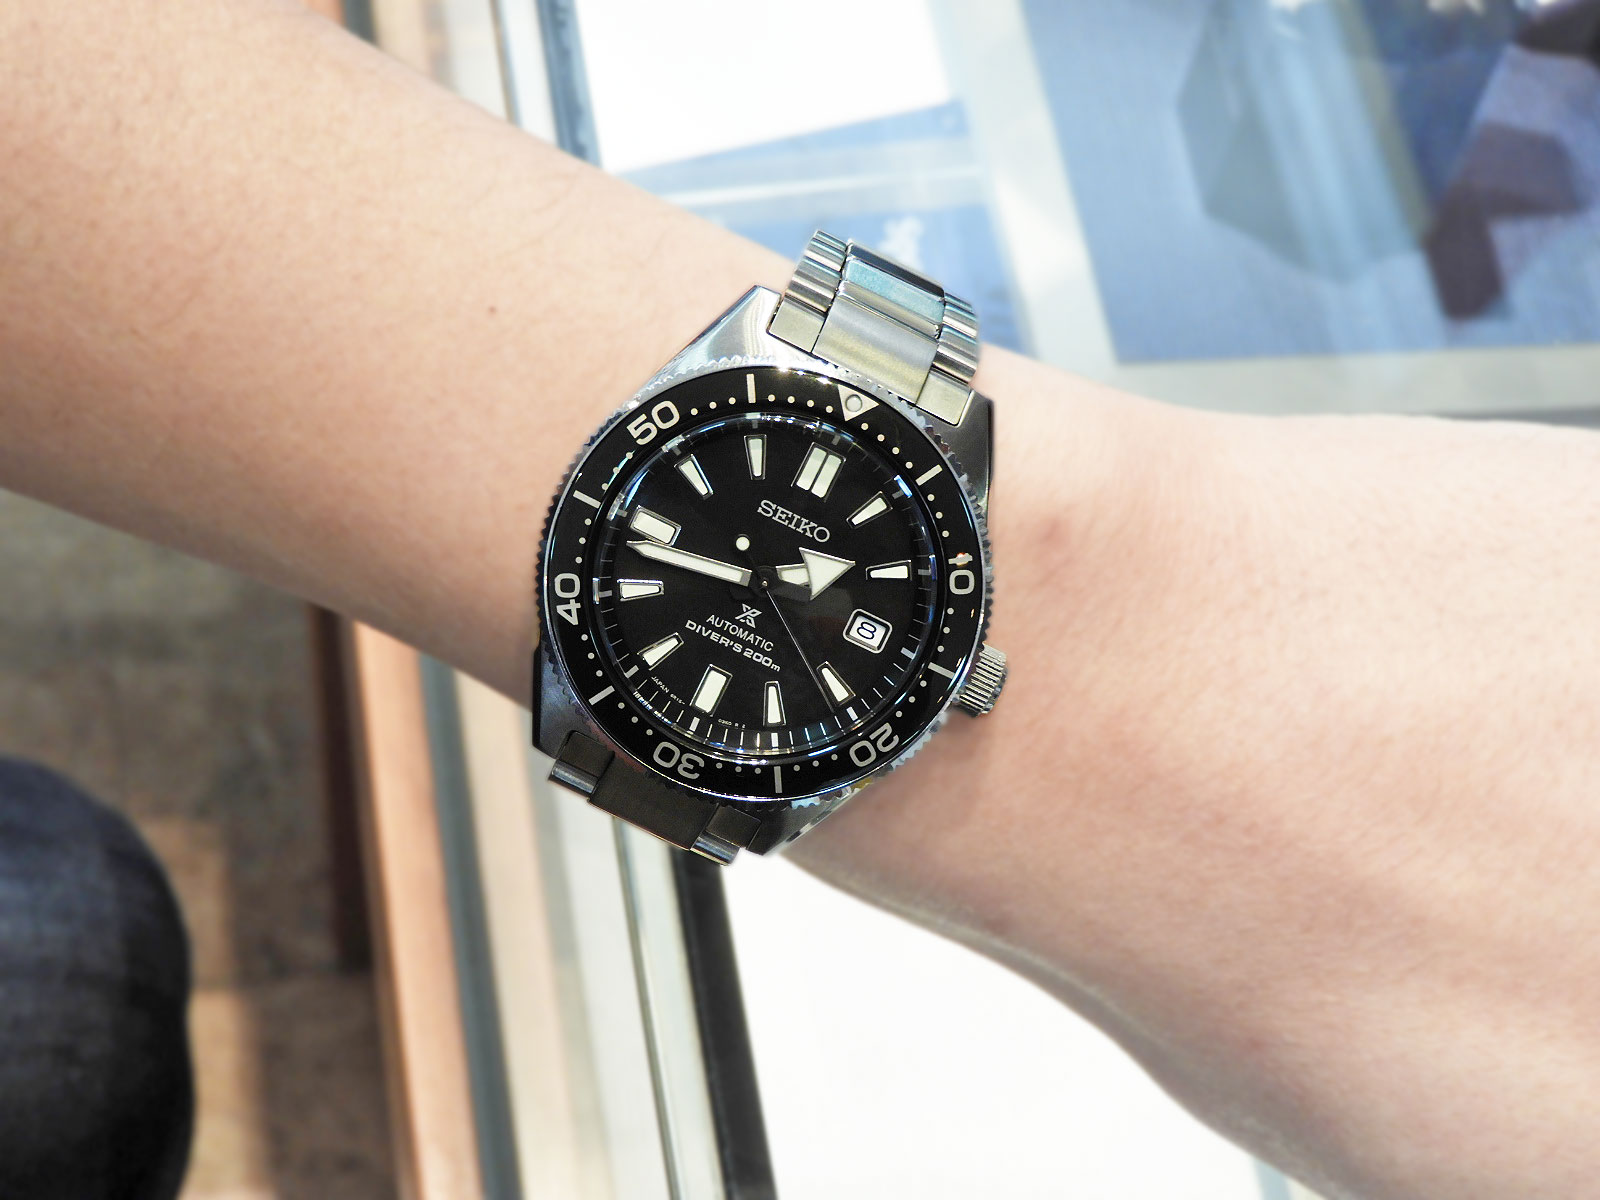 ヒストリカルコレクション【別売のウレタンベルト付き】セイコー プロスペックス SBDC051 腕時計